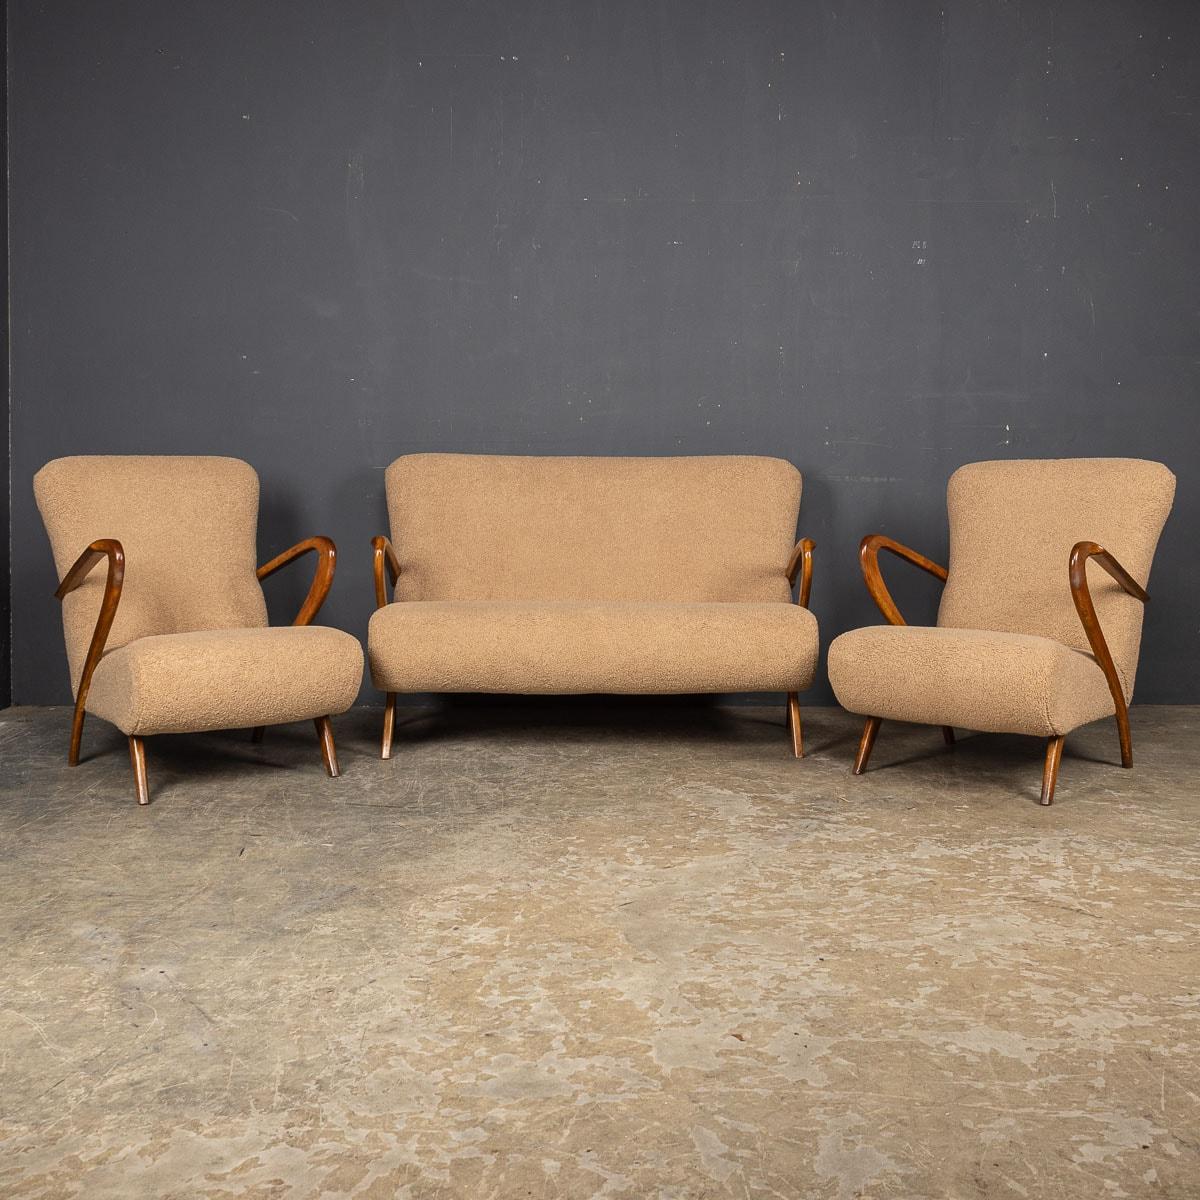 Magnifique ensemble de fauteuils et canapé italiens du milieu du 20ème siècle par Paulo Buffa. Ces pièces témoignent d'une qualité irréprochable, avec une finition somptueuse en tissu bouclé italien doux. Ils se distinguent par leurs proportions